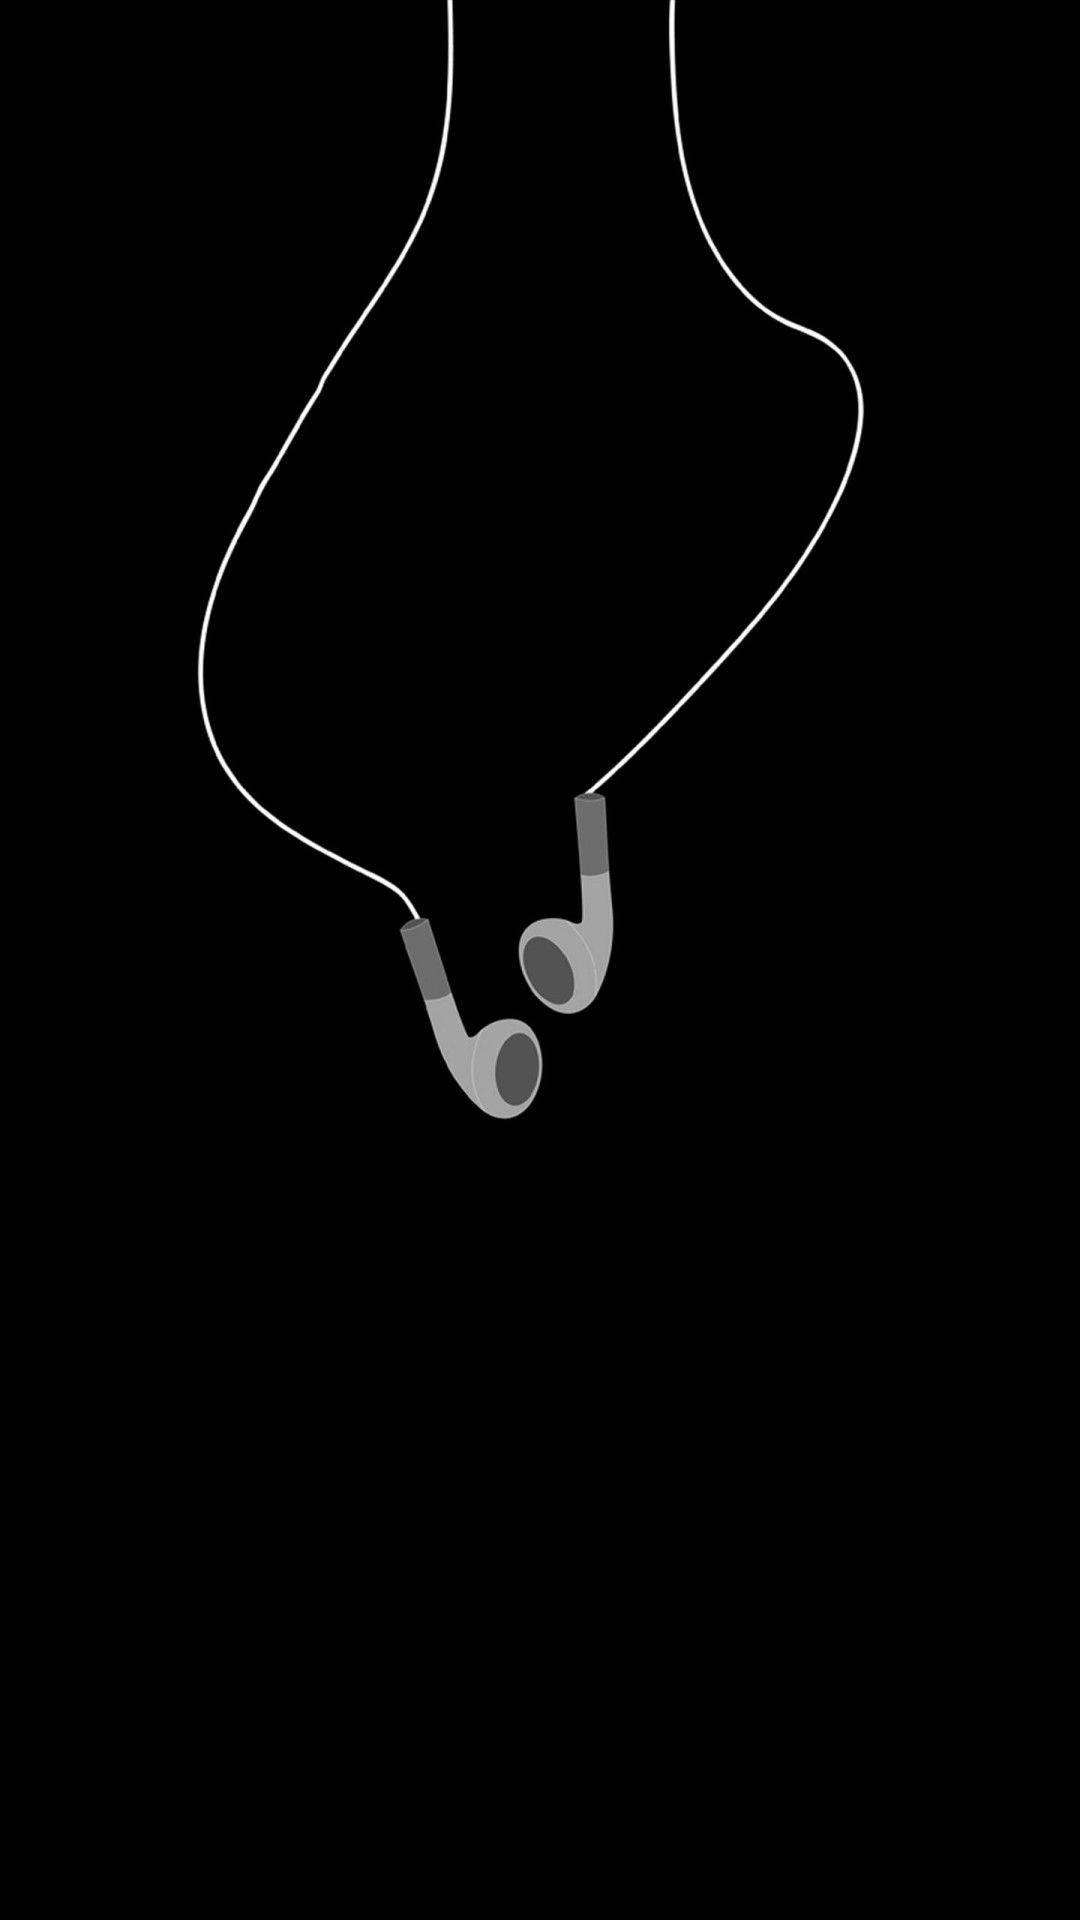 Earphones In Black Apple Iphone Background